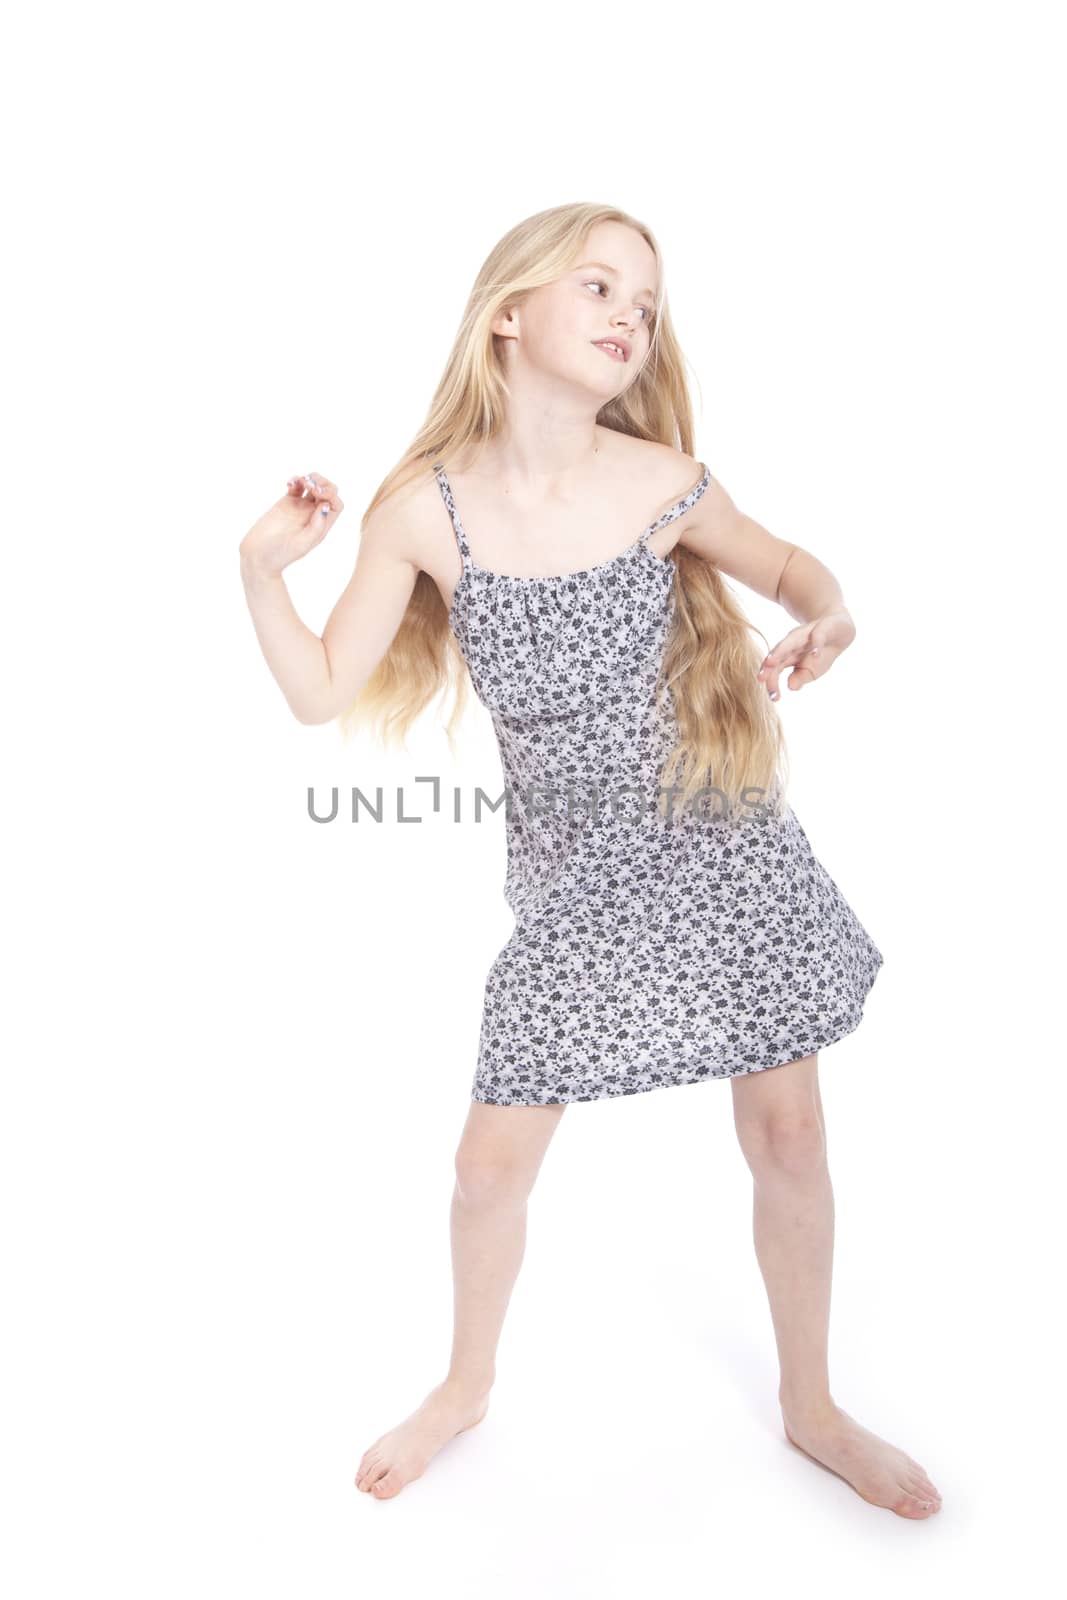 young blond girl dancing in studio by ahavelaar